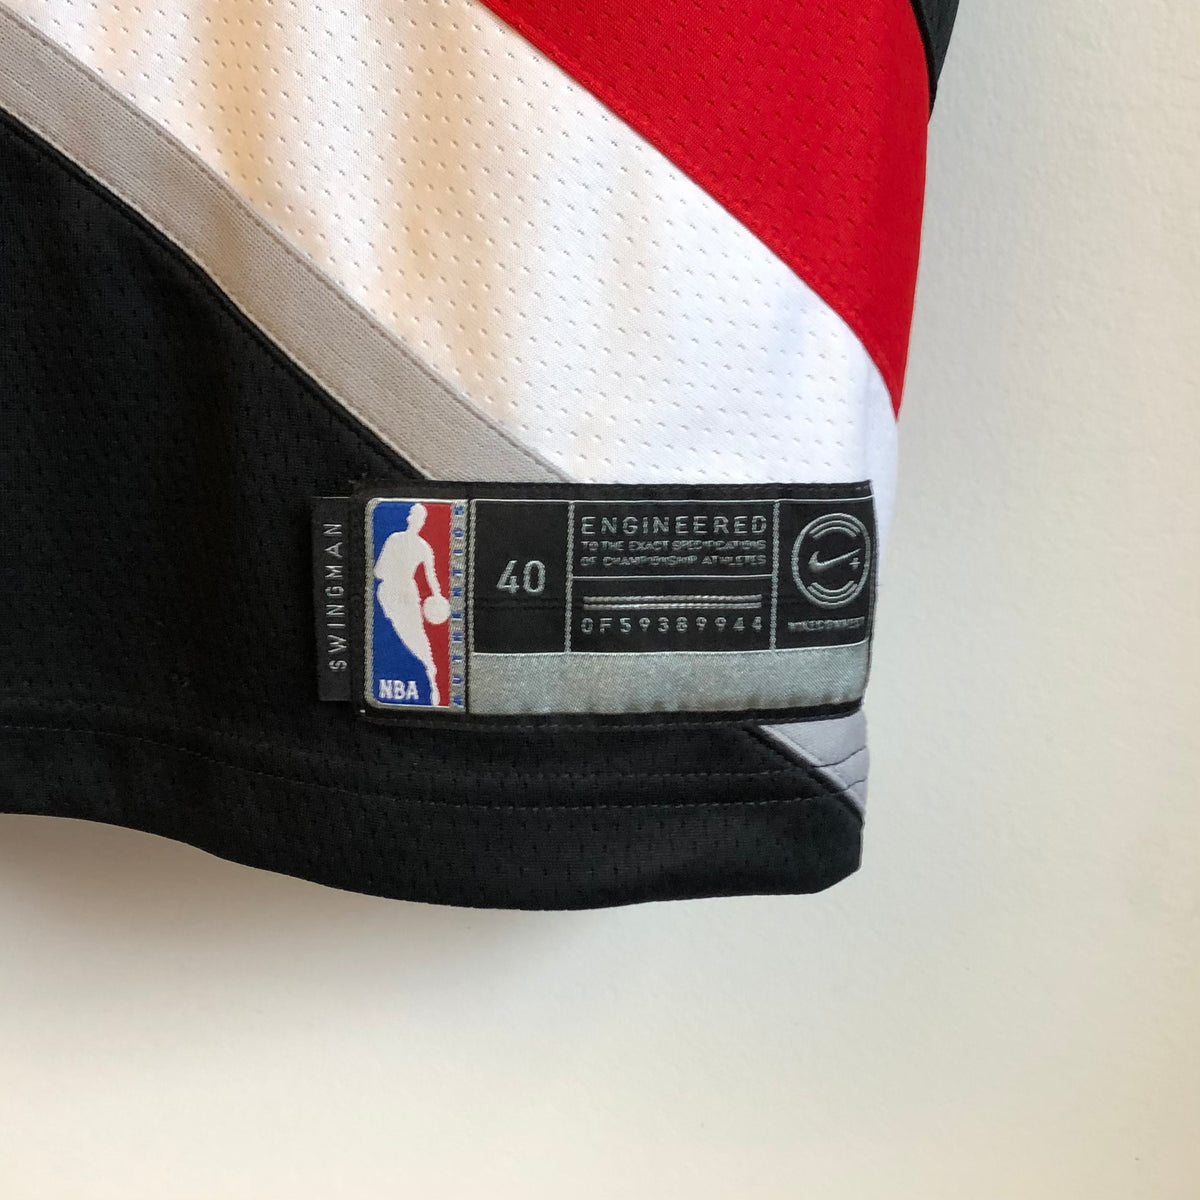 Rare Exclusive Nike Portland Blazers Rip City 19/20 Cj McCollum Authentic  jersey